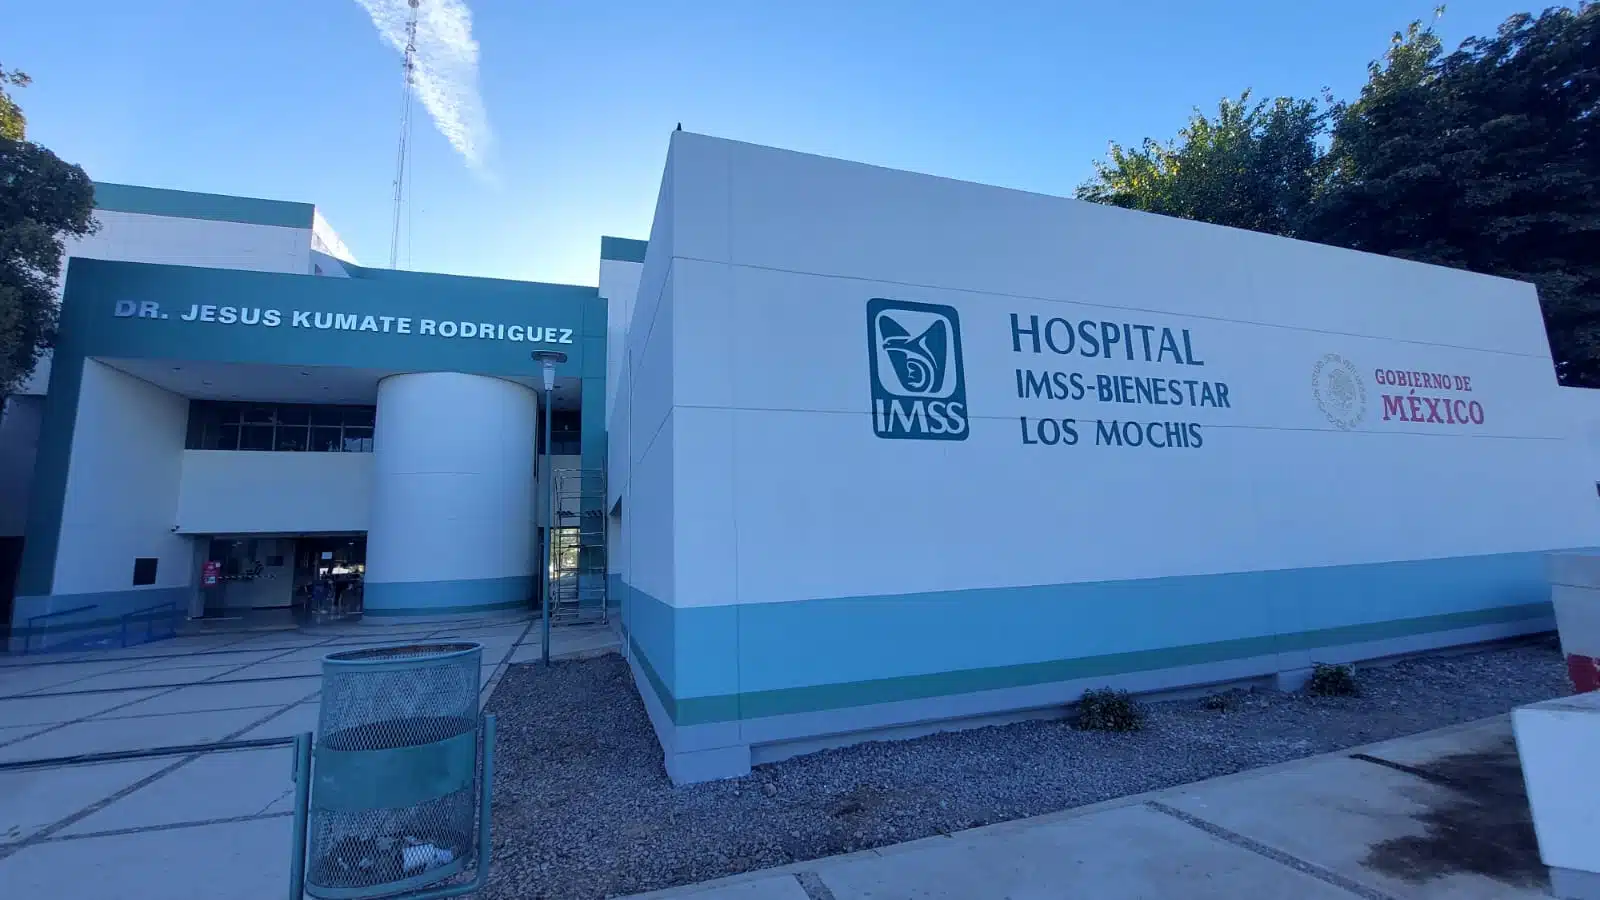 Hospital IMSS Bienestar Los Mochos